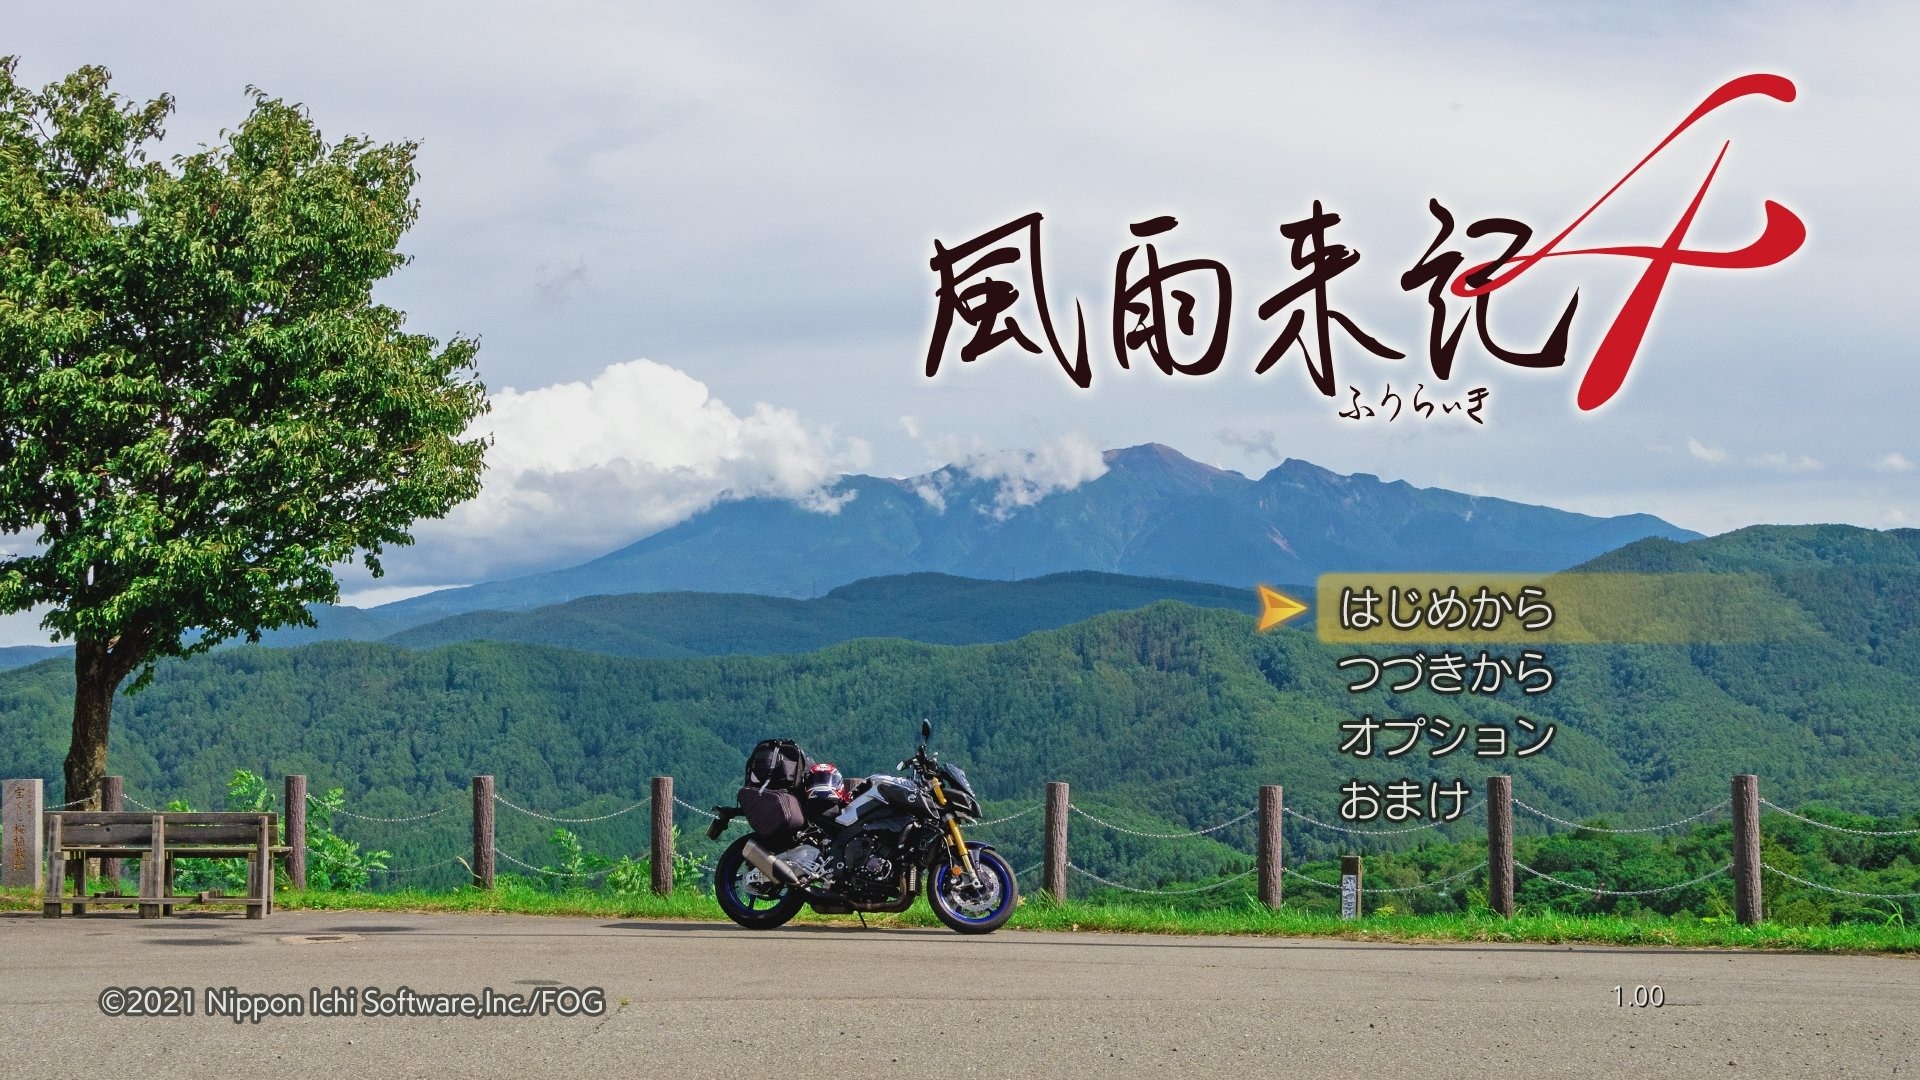 旅行冒险游戏《风雨来记4》公布新DLC内容 岐阜县周边全新地区